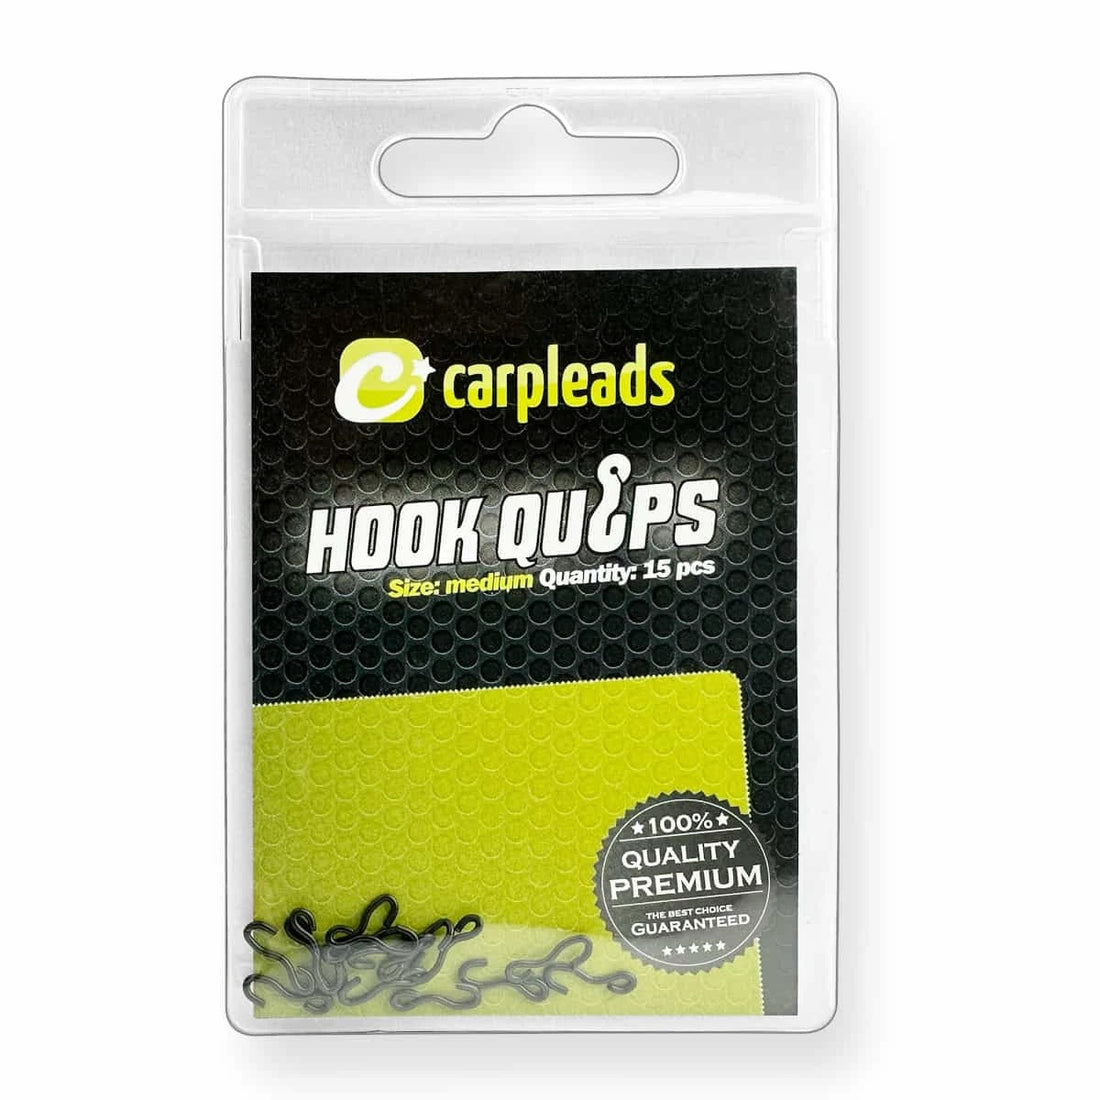 Carpleads Hook Quips Medium